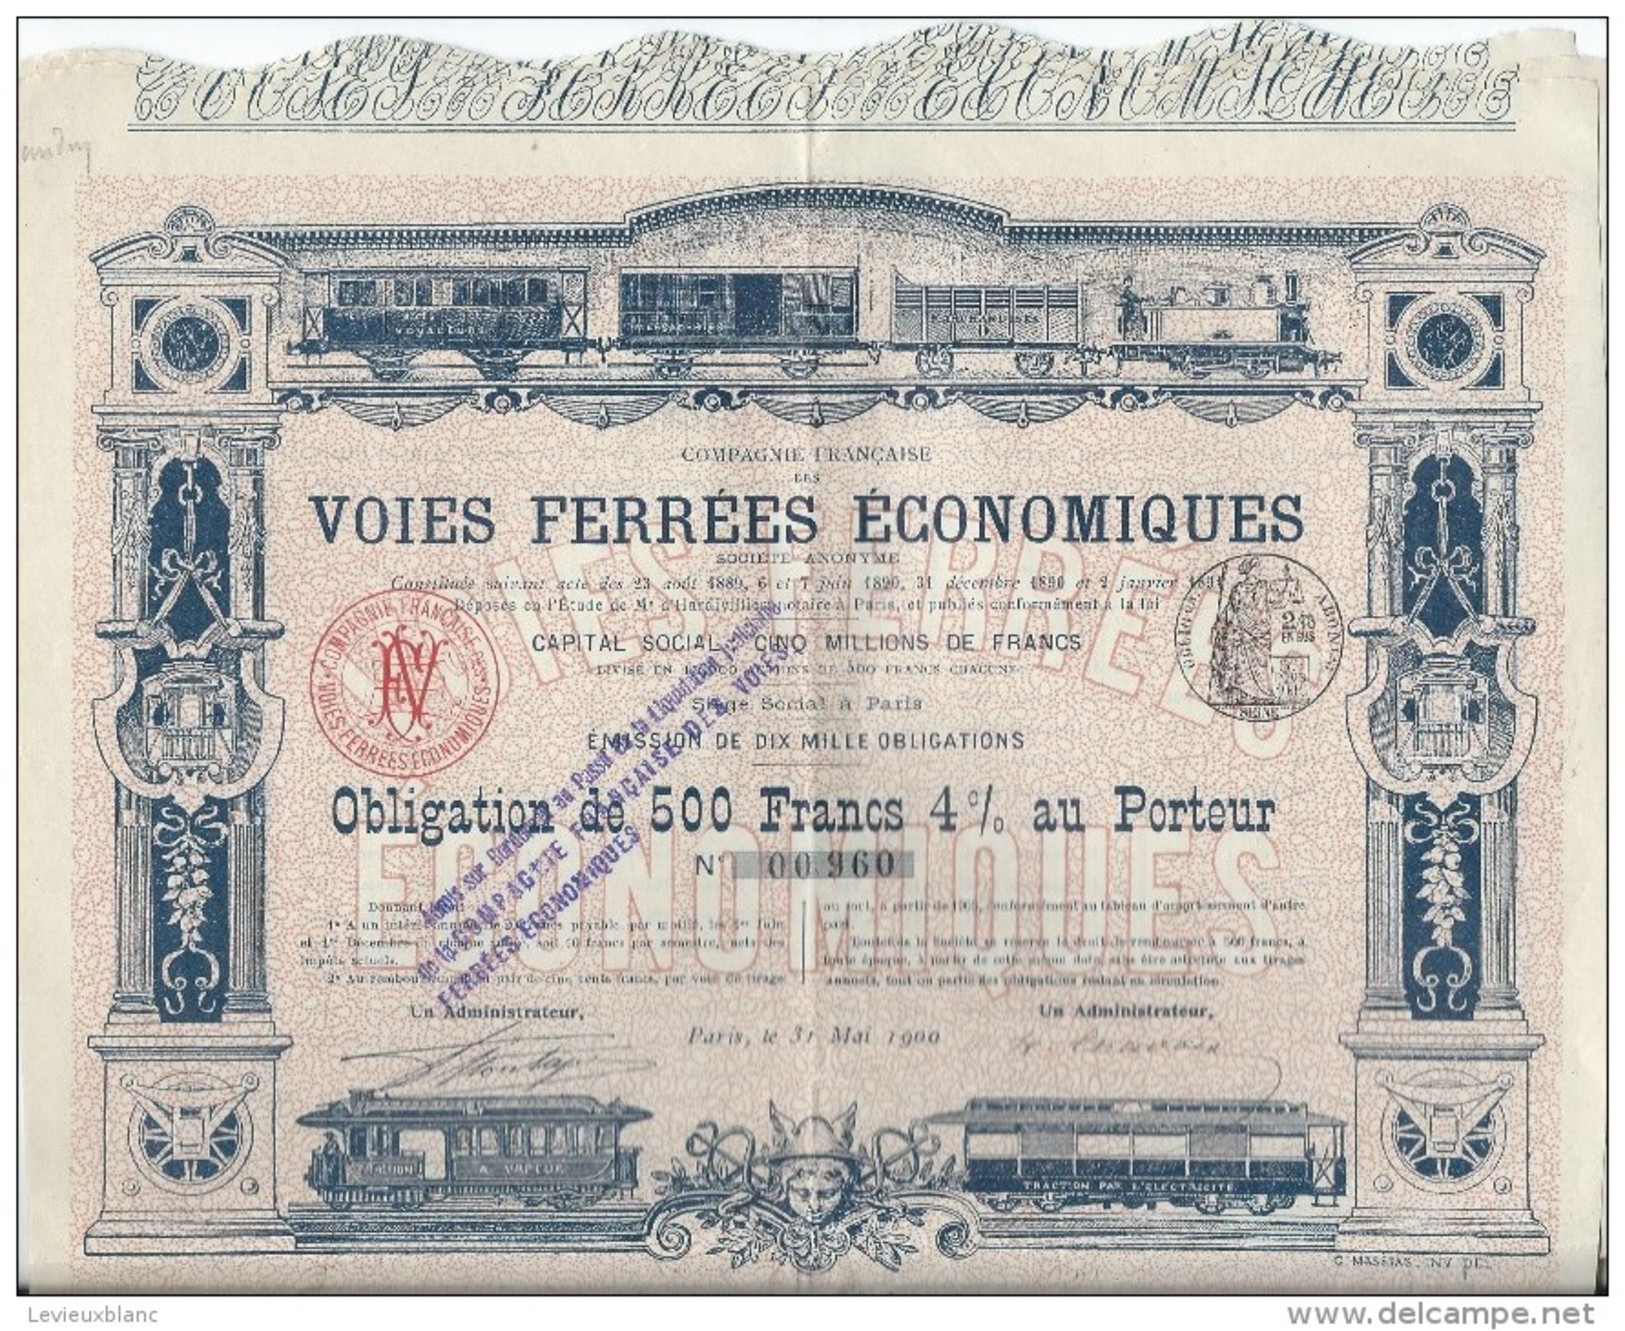 Obligation De 500 Francs 4% Au Porteur/Voies Ferrées économiques /Paris /1900   ACT95bis - Railway & Tramway